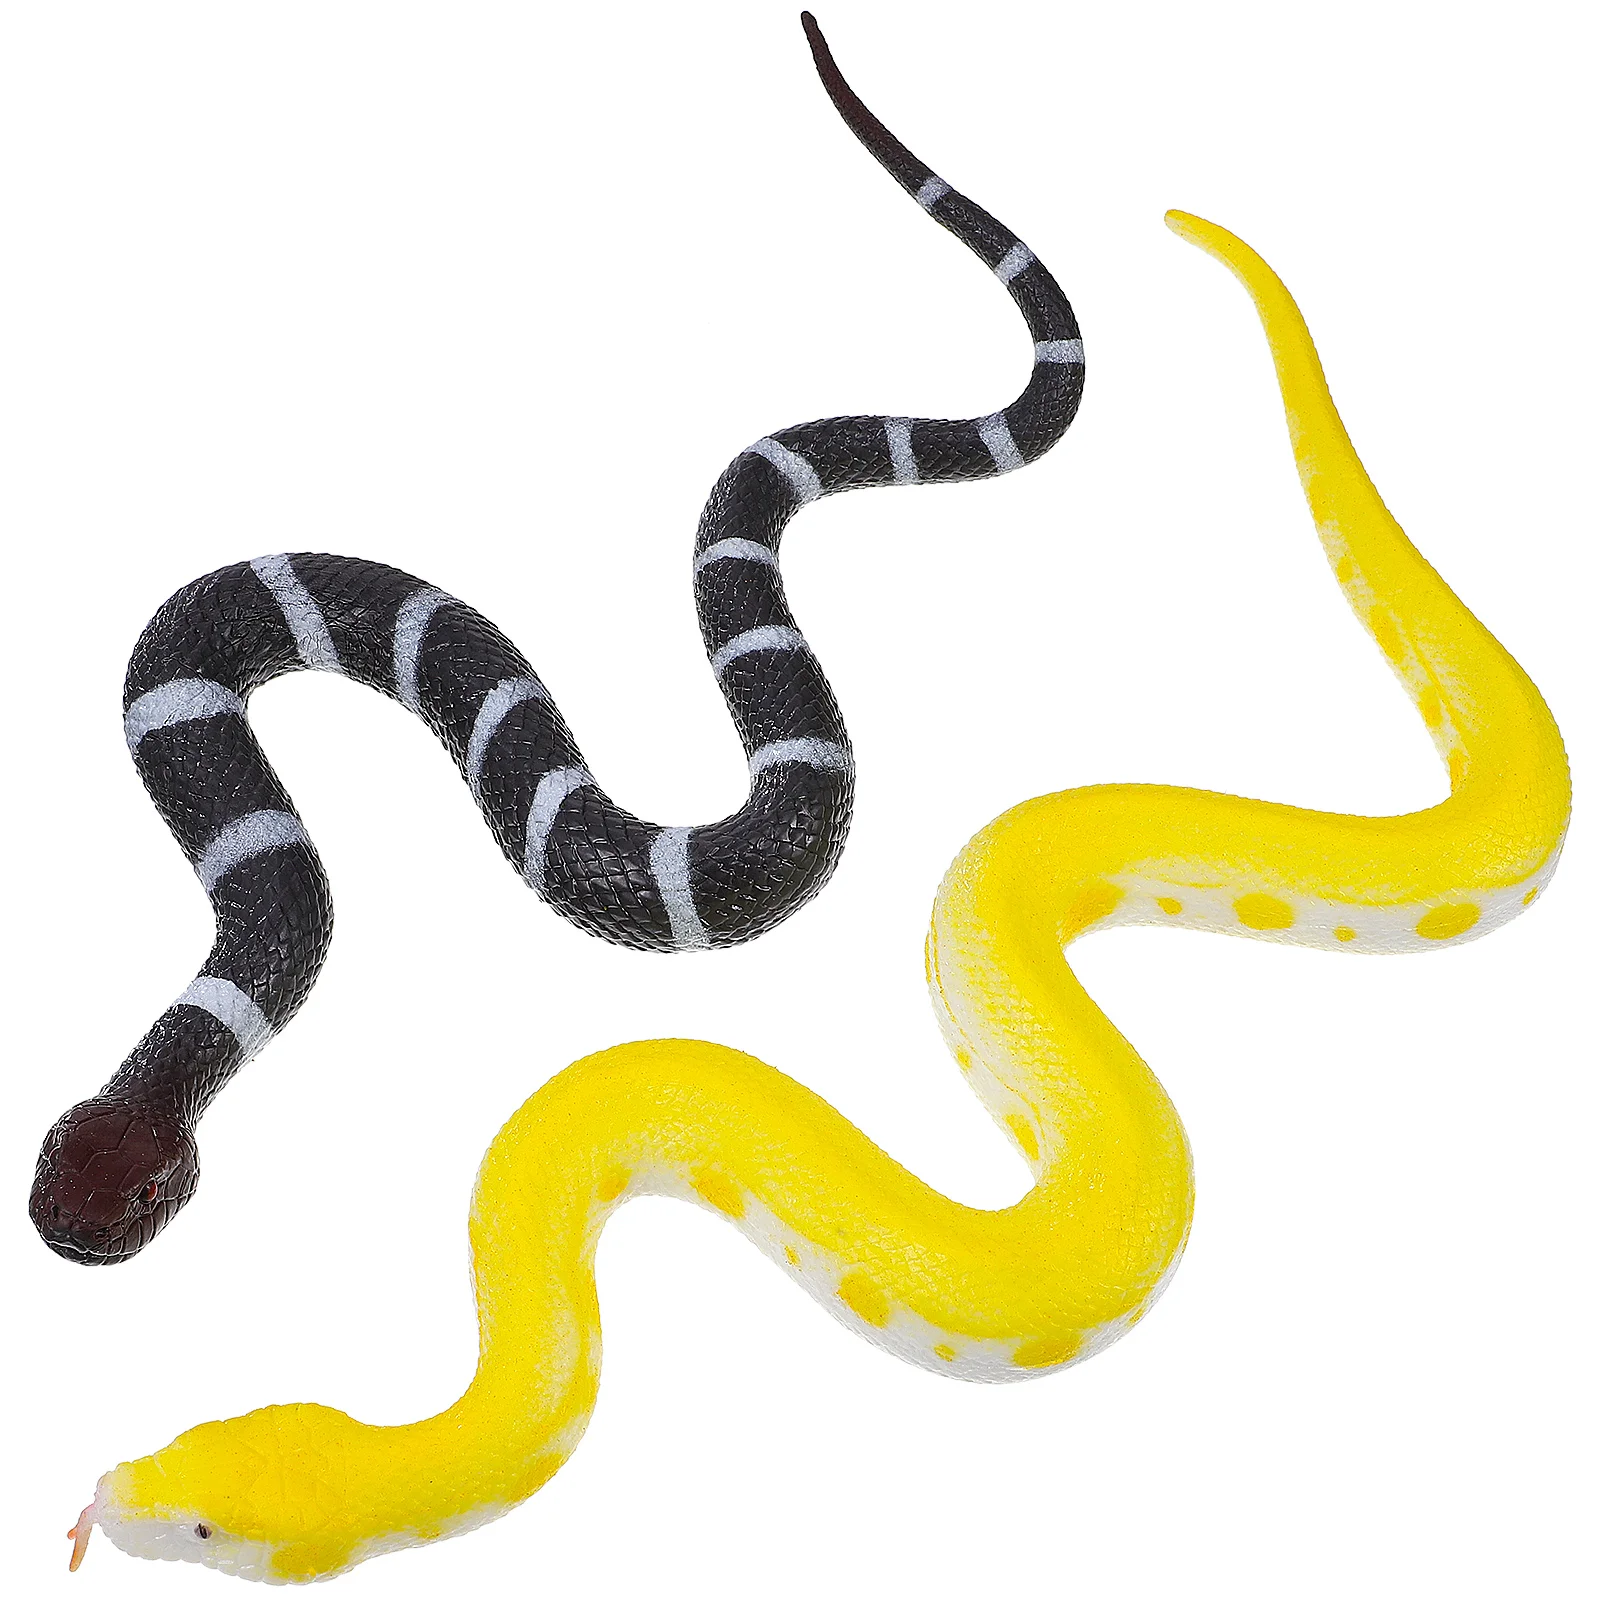 

Реалистичная страшная искусственная змея, имитация змеи, украшения для Хэллоуина